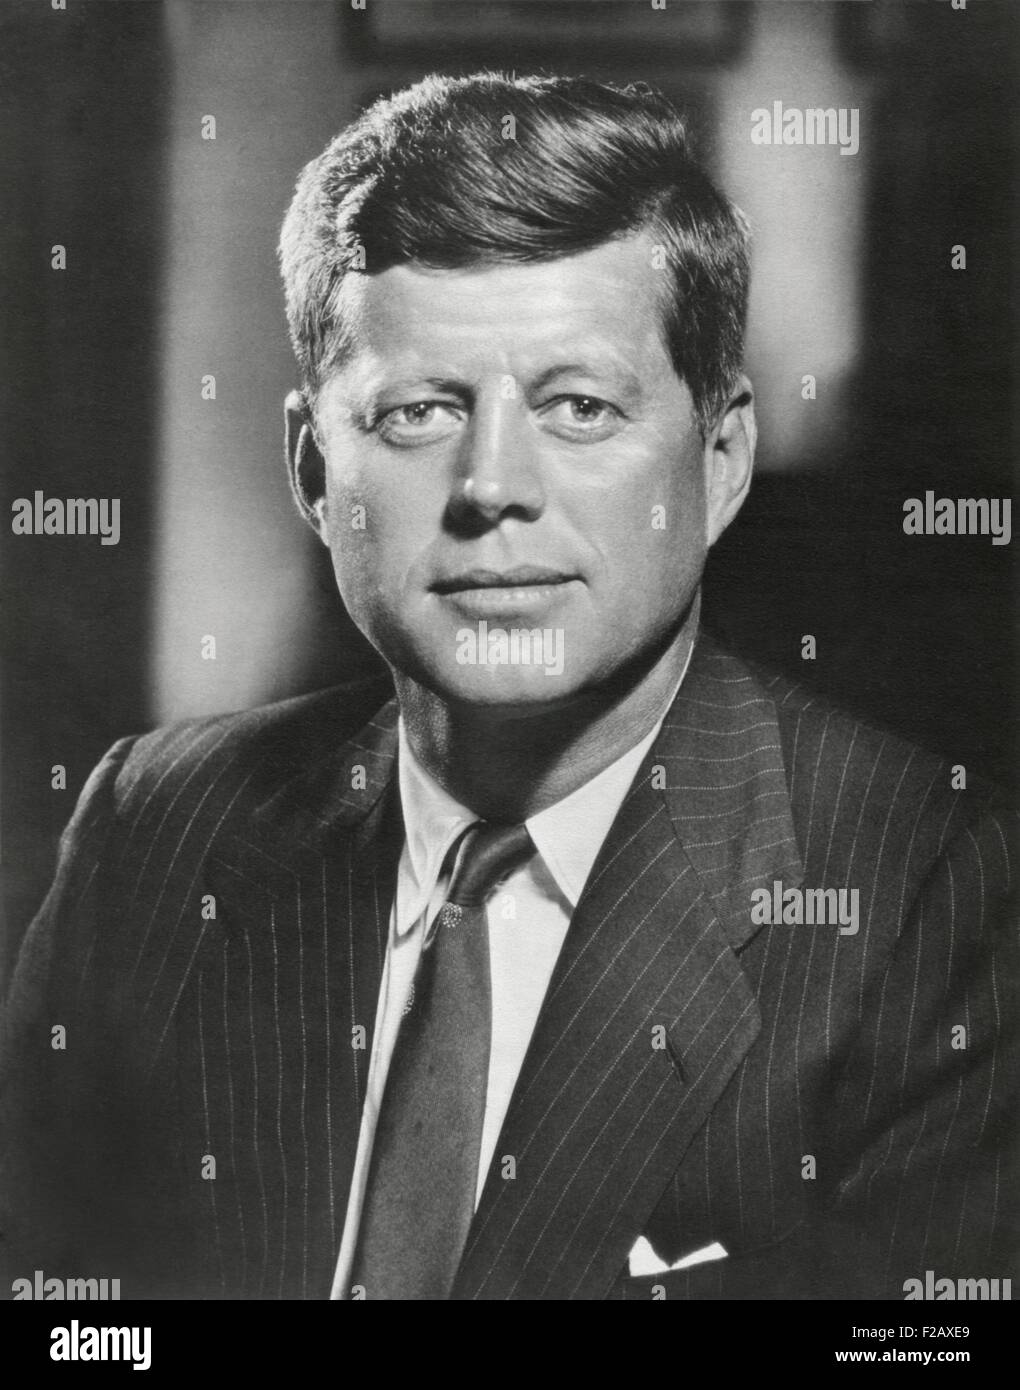 Präsident John Kennedy. Porträt von Bachrach, ca. 1960 / 61 genommen. (BSLOC 2015 2 223) Stockfoto